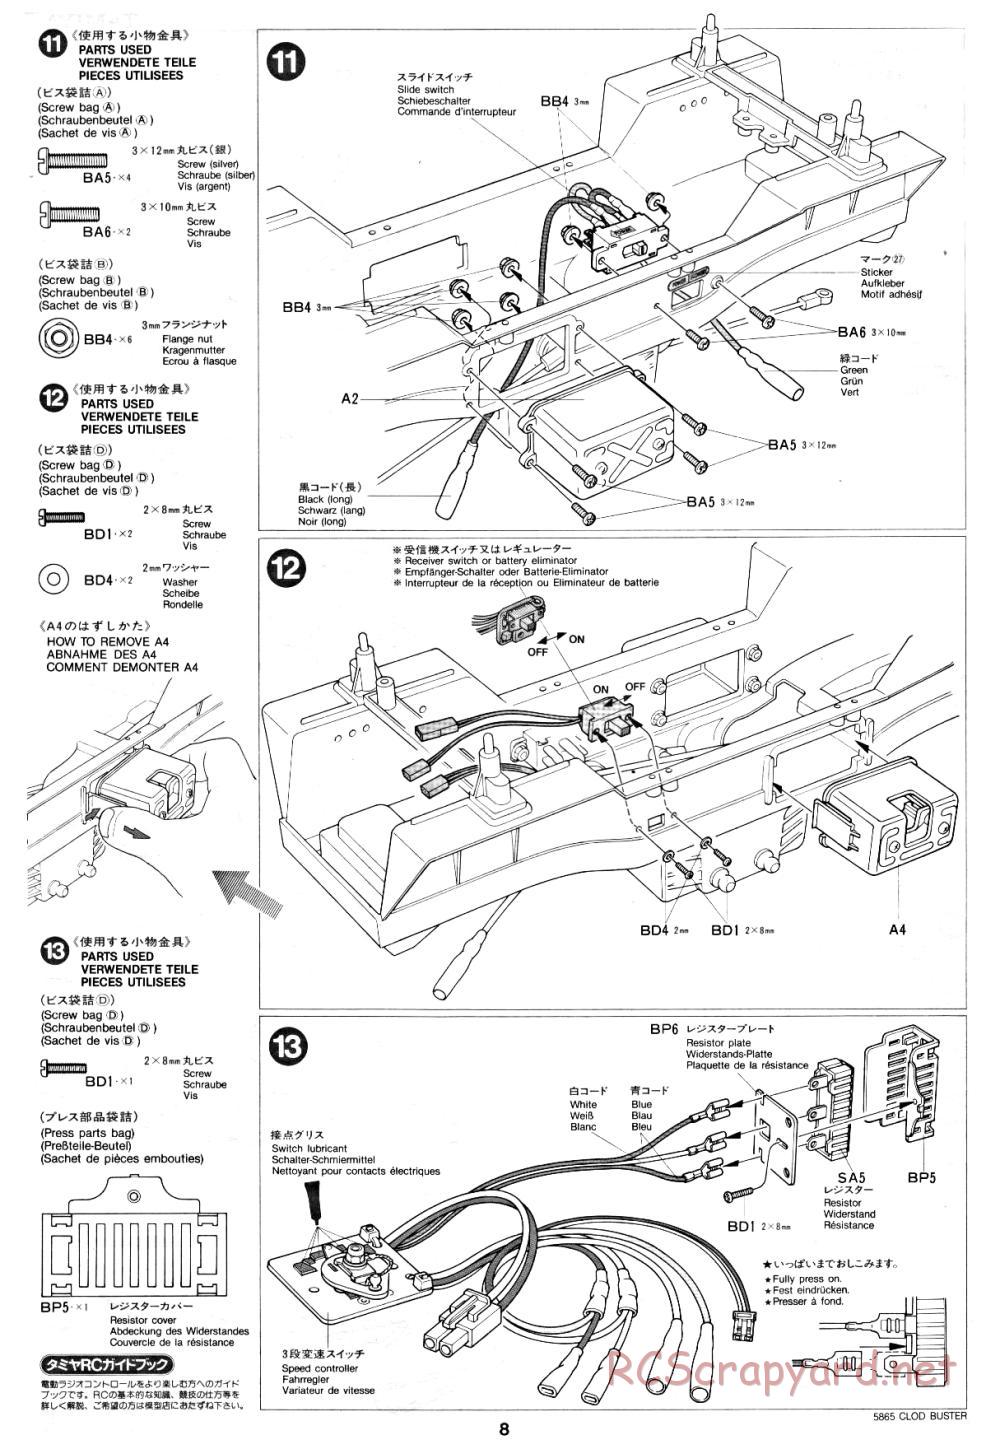 Tamiya - Clod Buster - 58065 - Manual - Page 8